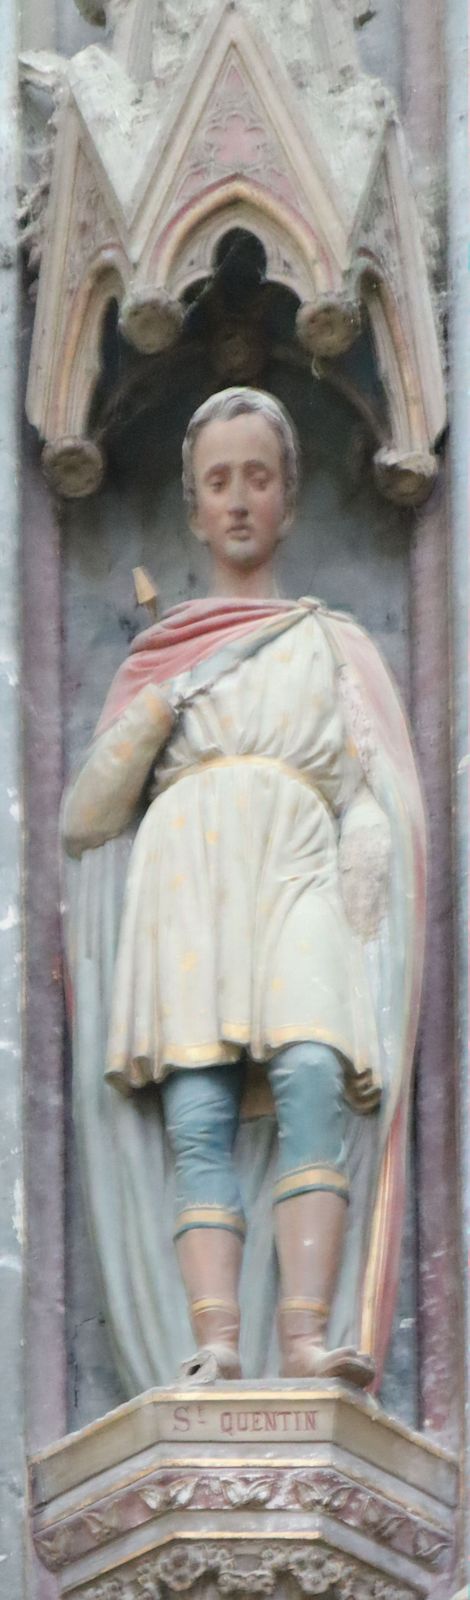 Statue, 1875, in der Basilika St-Quentin in St-Quentin